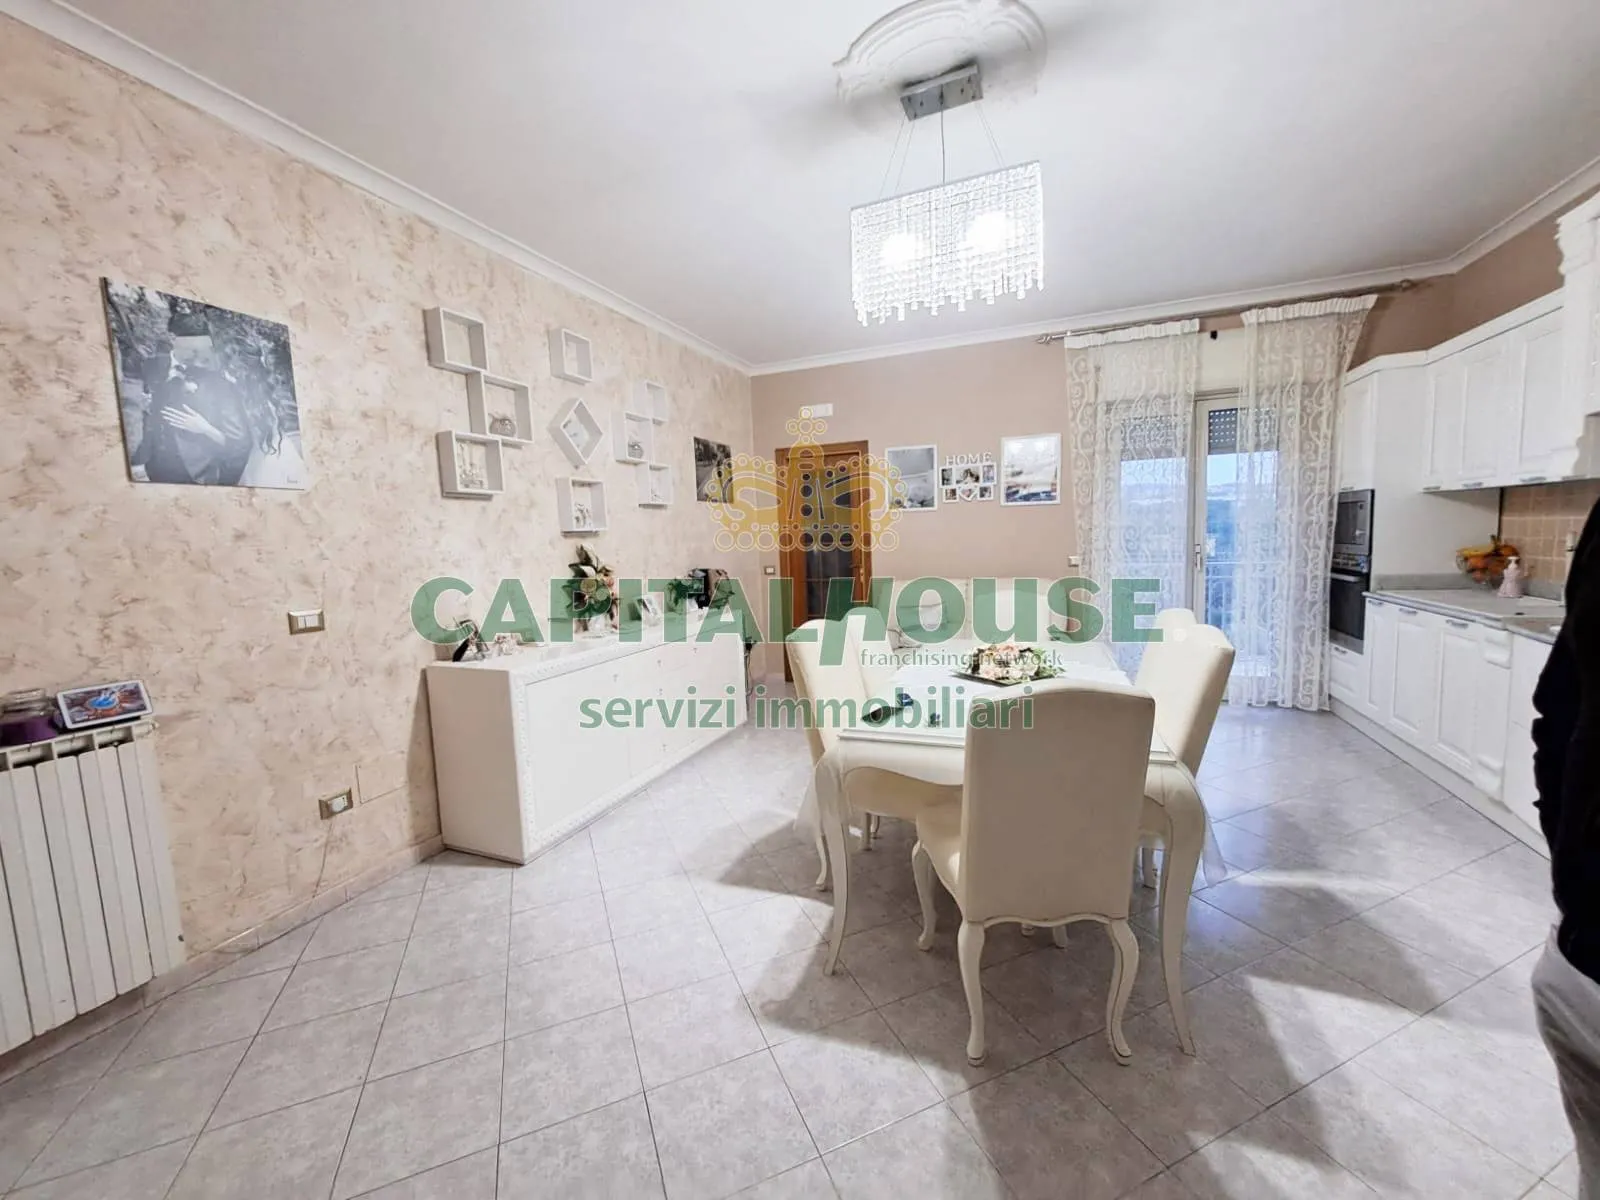 Immagine per Appartamento in vendita a Calvizzano